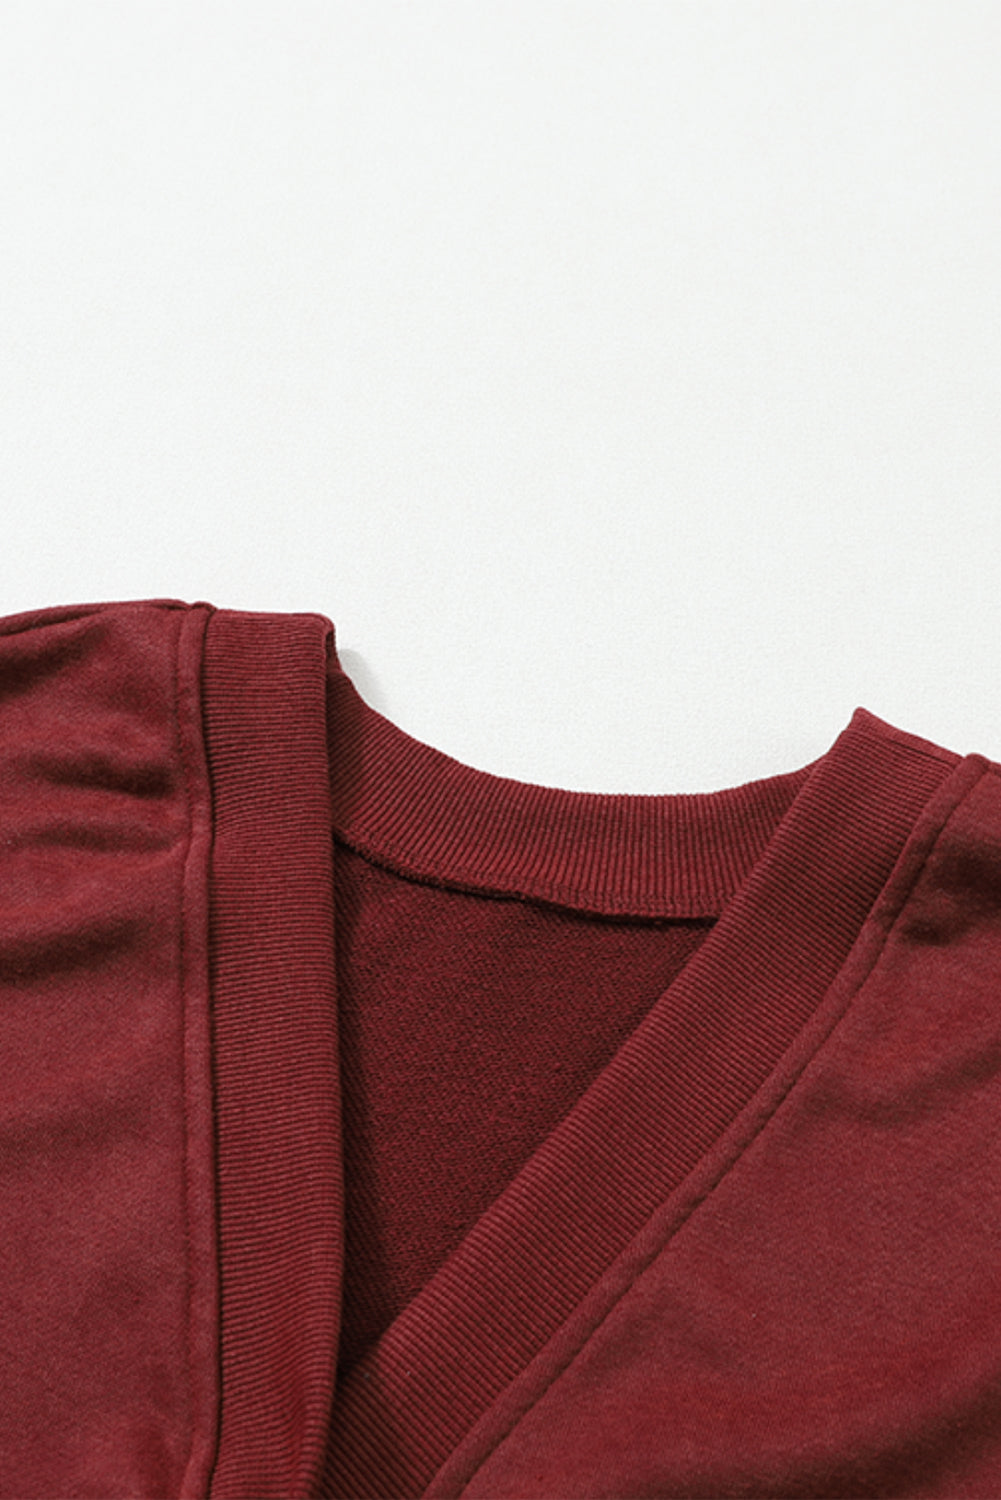 Vatrenocrvena jaka majica s otvorenim leđima i otvorenim šavovima